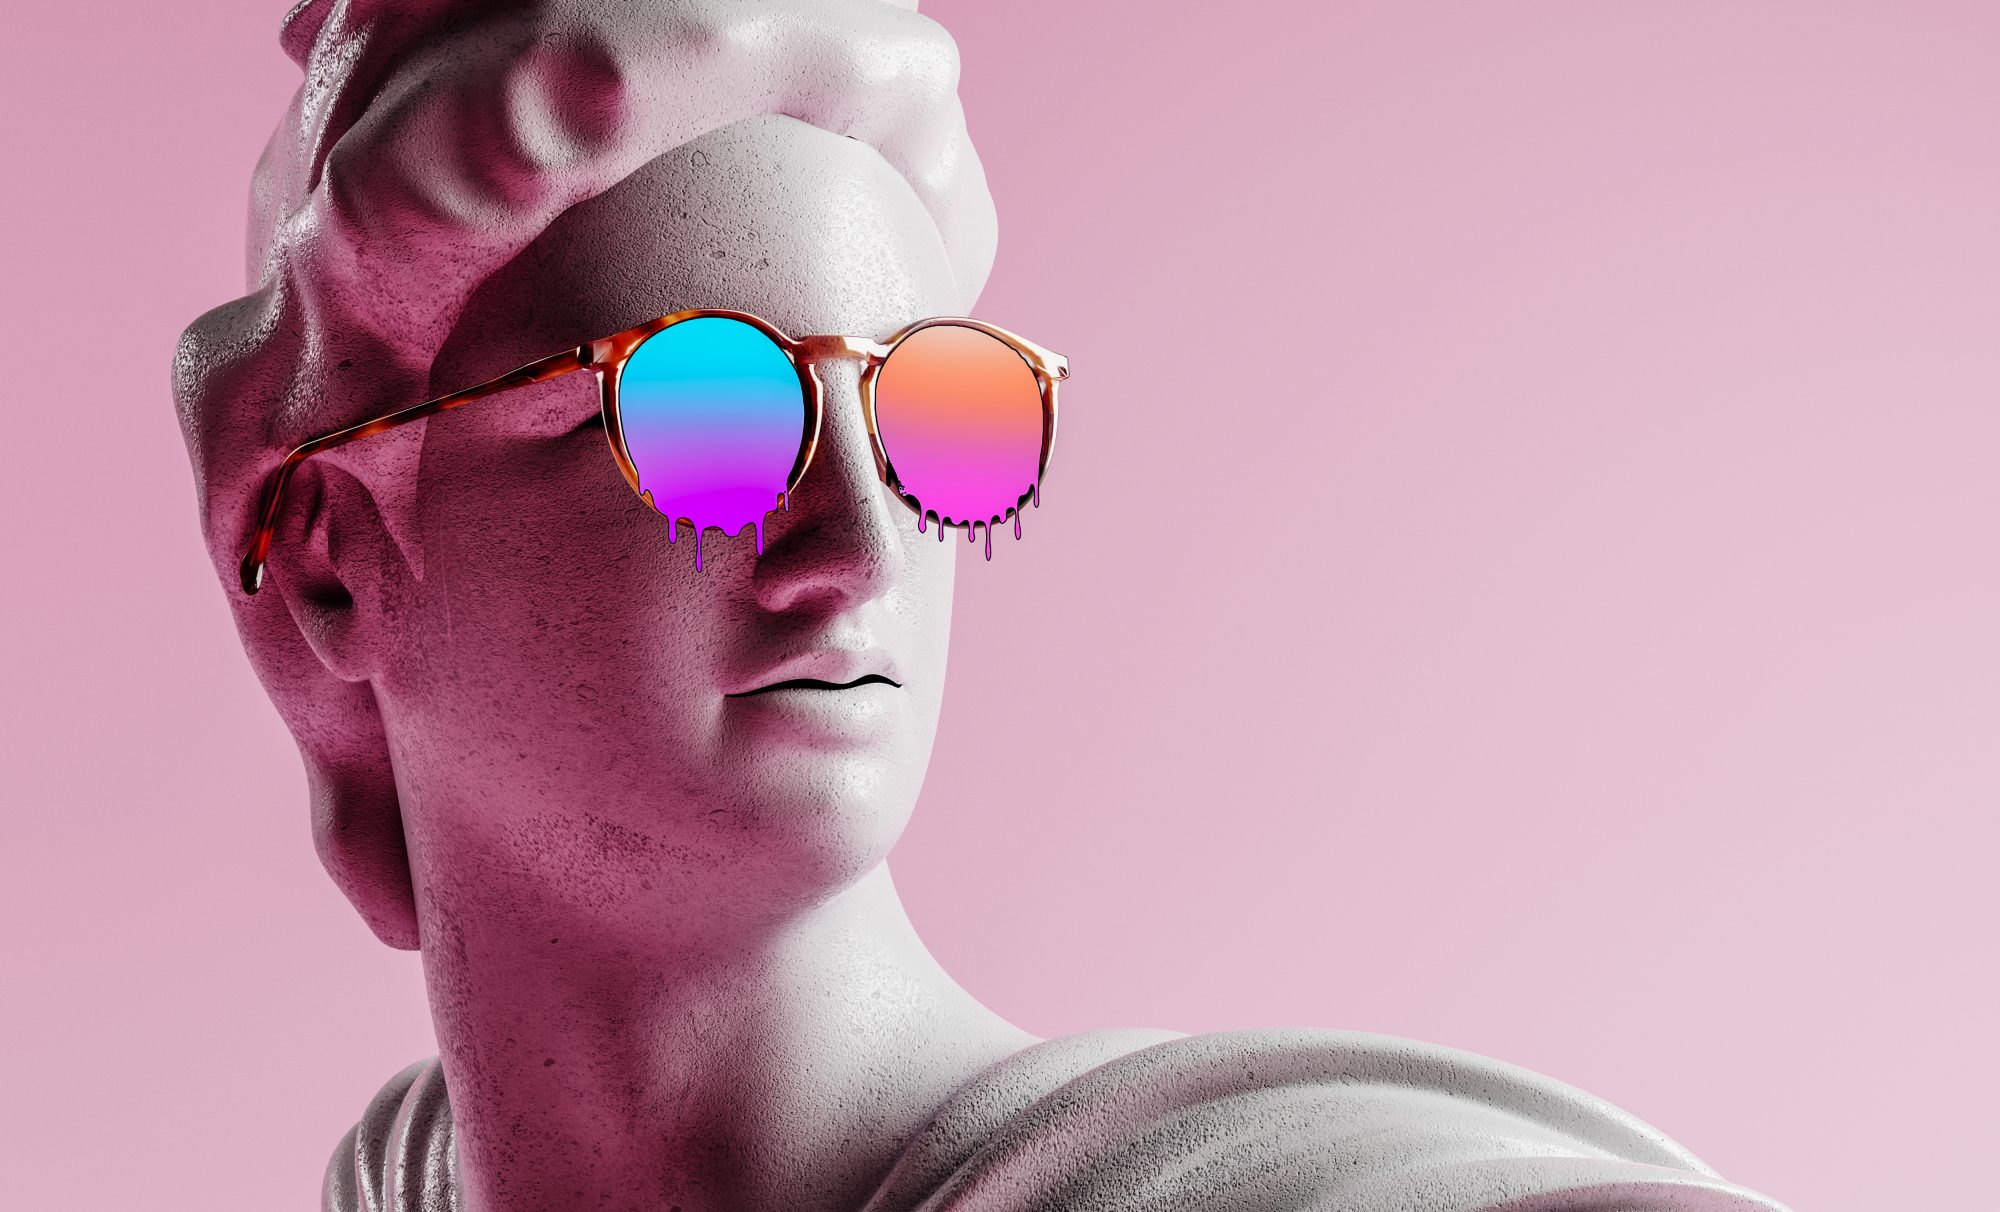 Apollo statue with sunglasses 